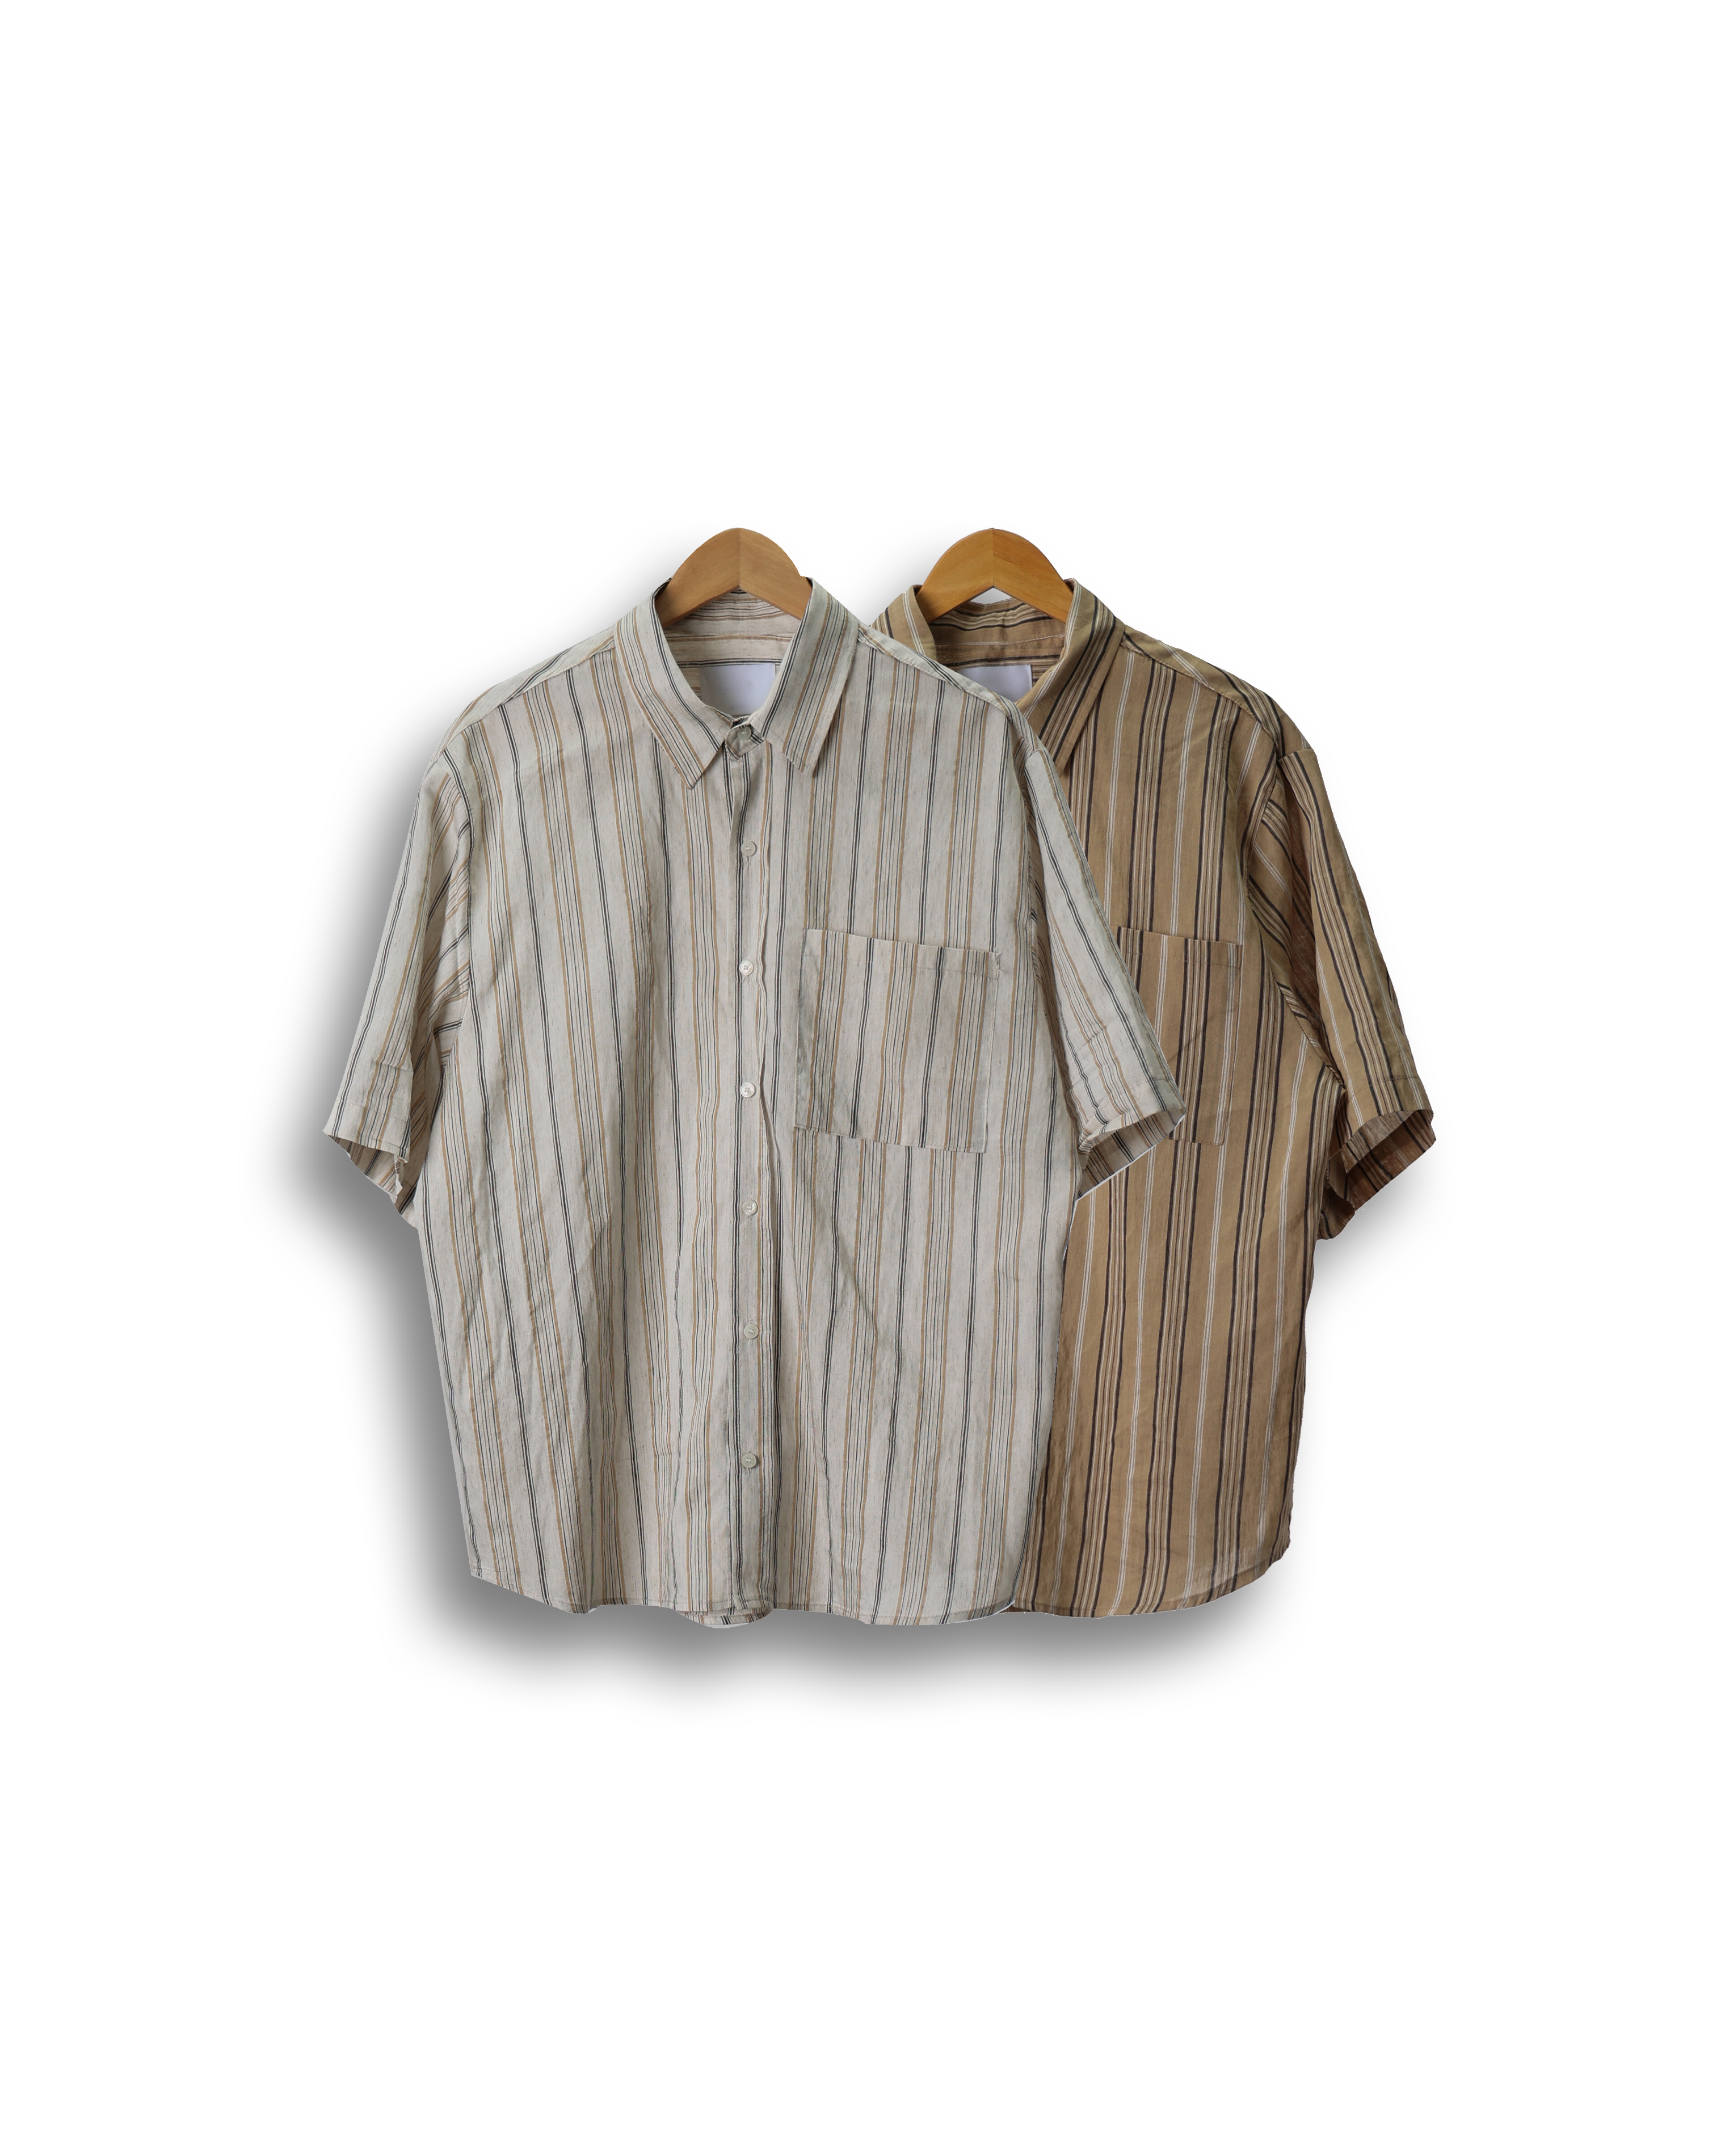 DIER Neutral Stripe Linen Half Shirts (Beige/Ivory)